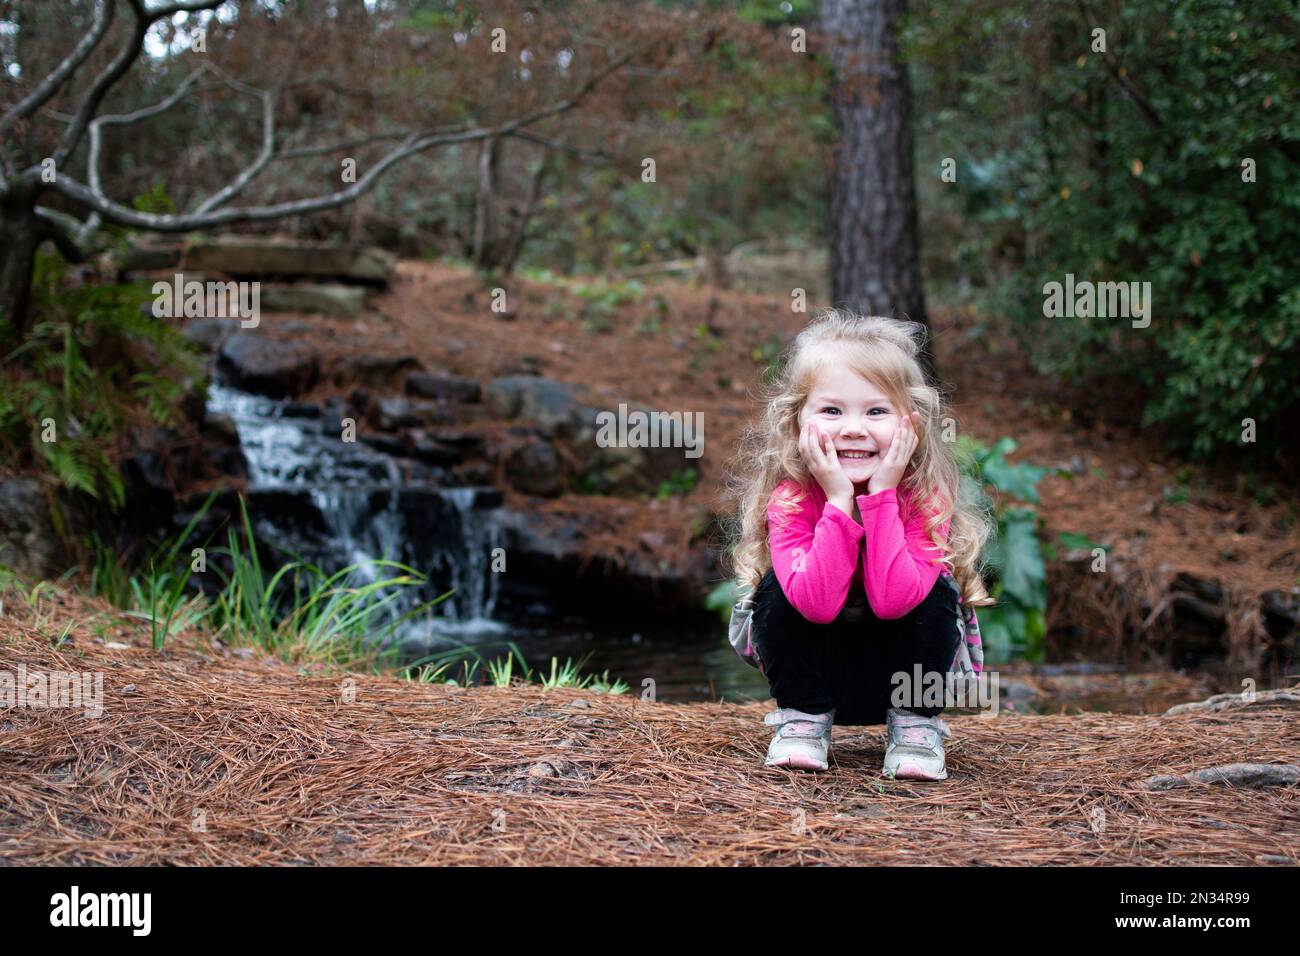 Jeune fille souriante dans un parc. Bébé blond caucasien en randonnée Banque D'Images